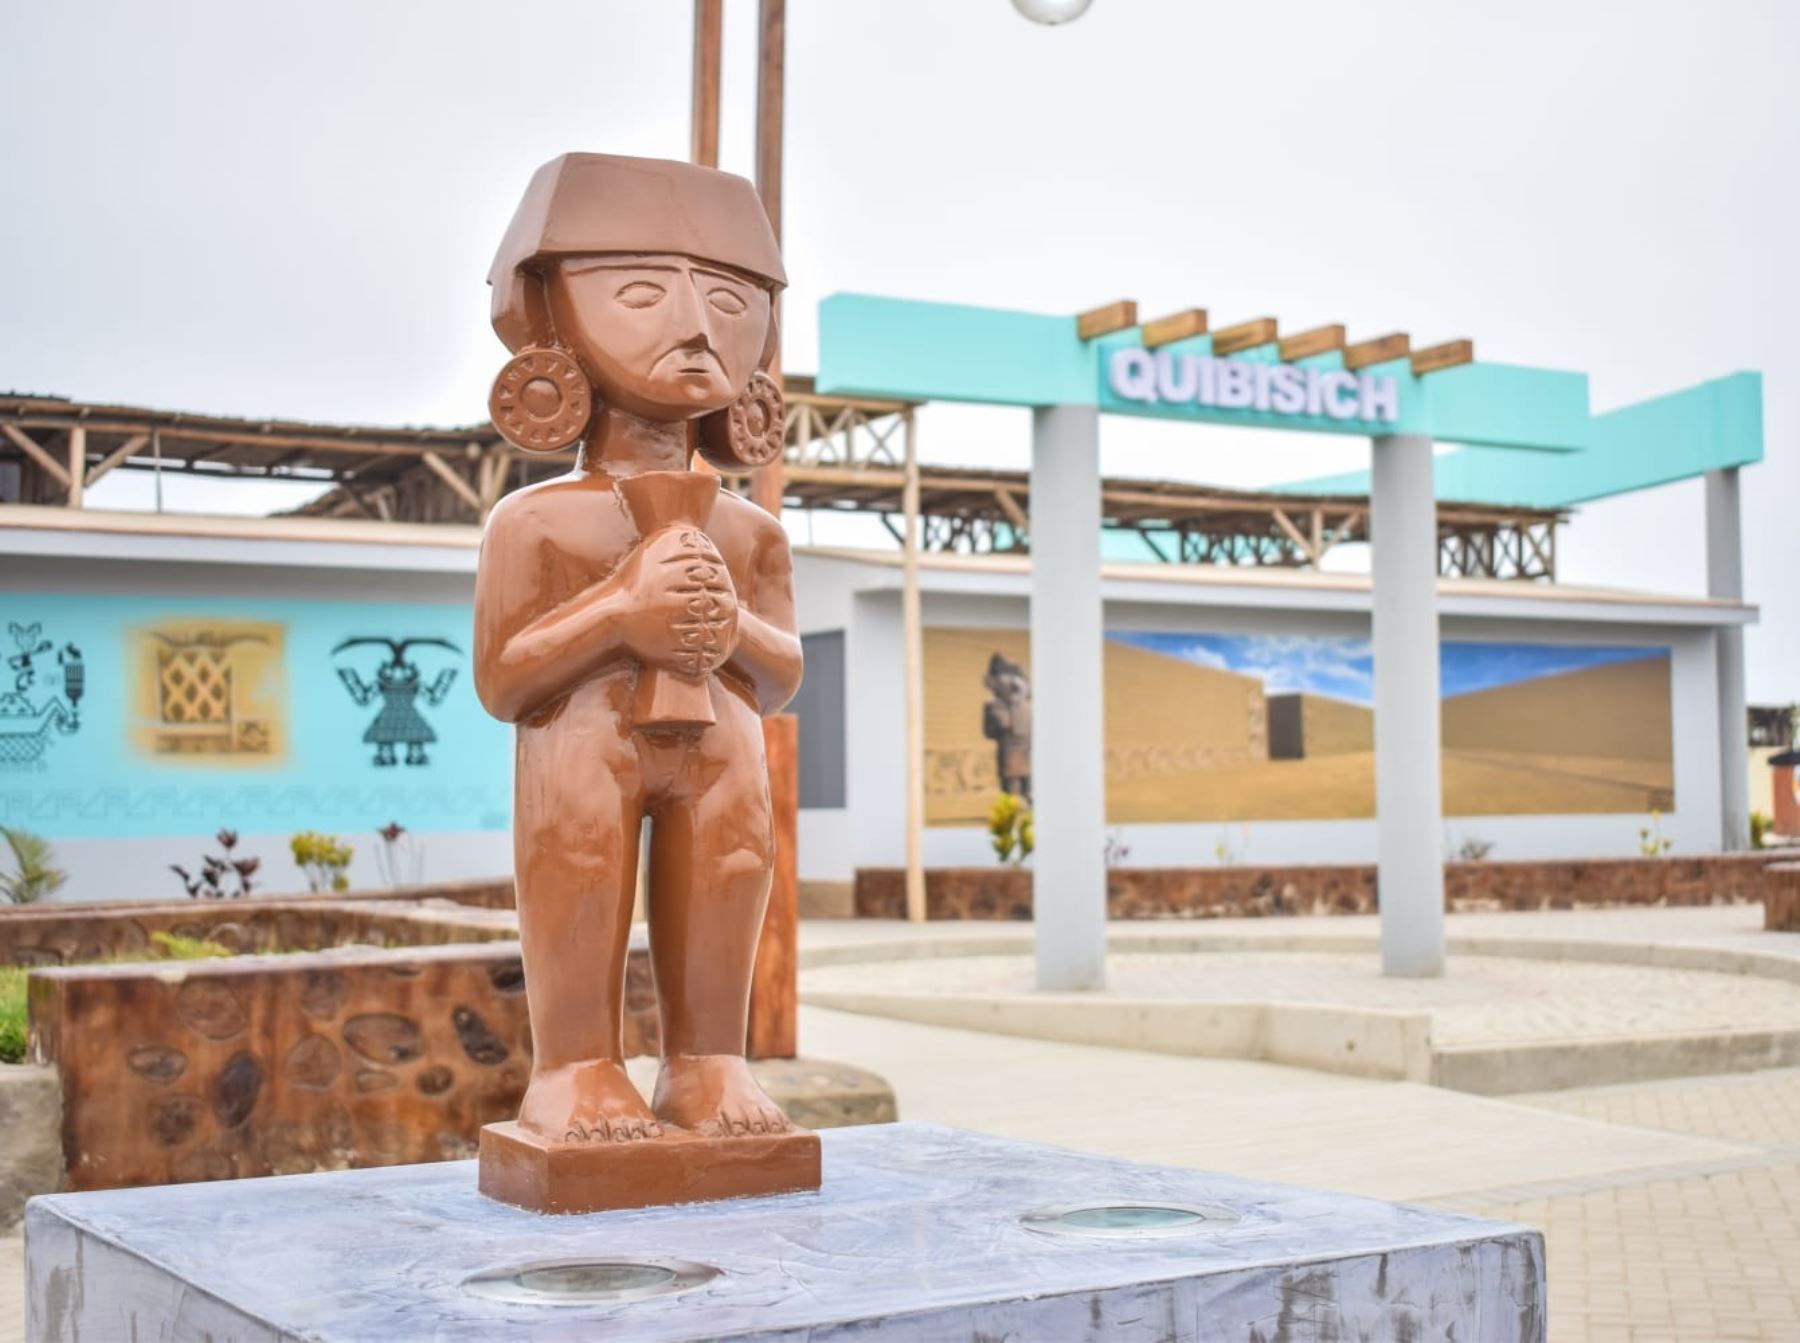 El moderno parador turístico Quibisich , ubicado en el distrito de Huanchaco, resalta por su decoración inspirada en la iconografía Chimú. ANDINA/Difusión